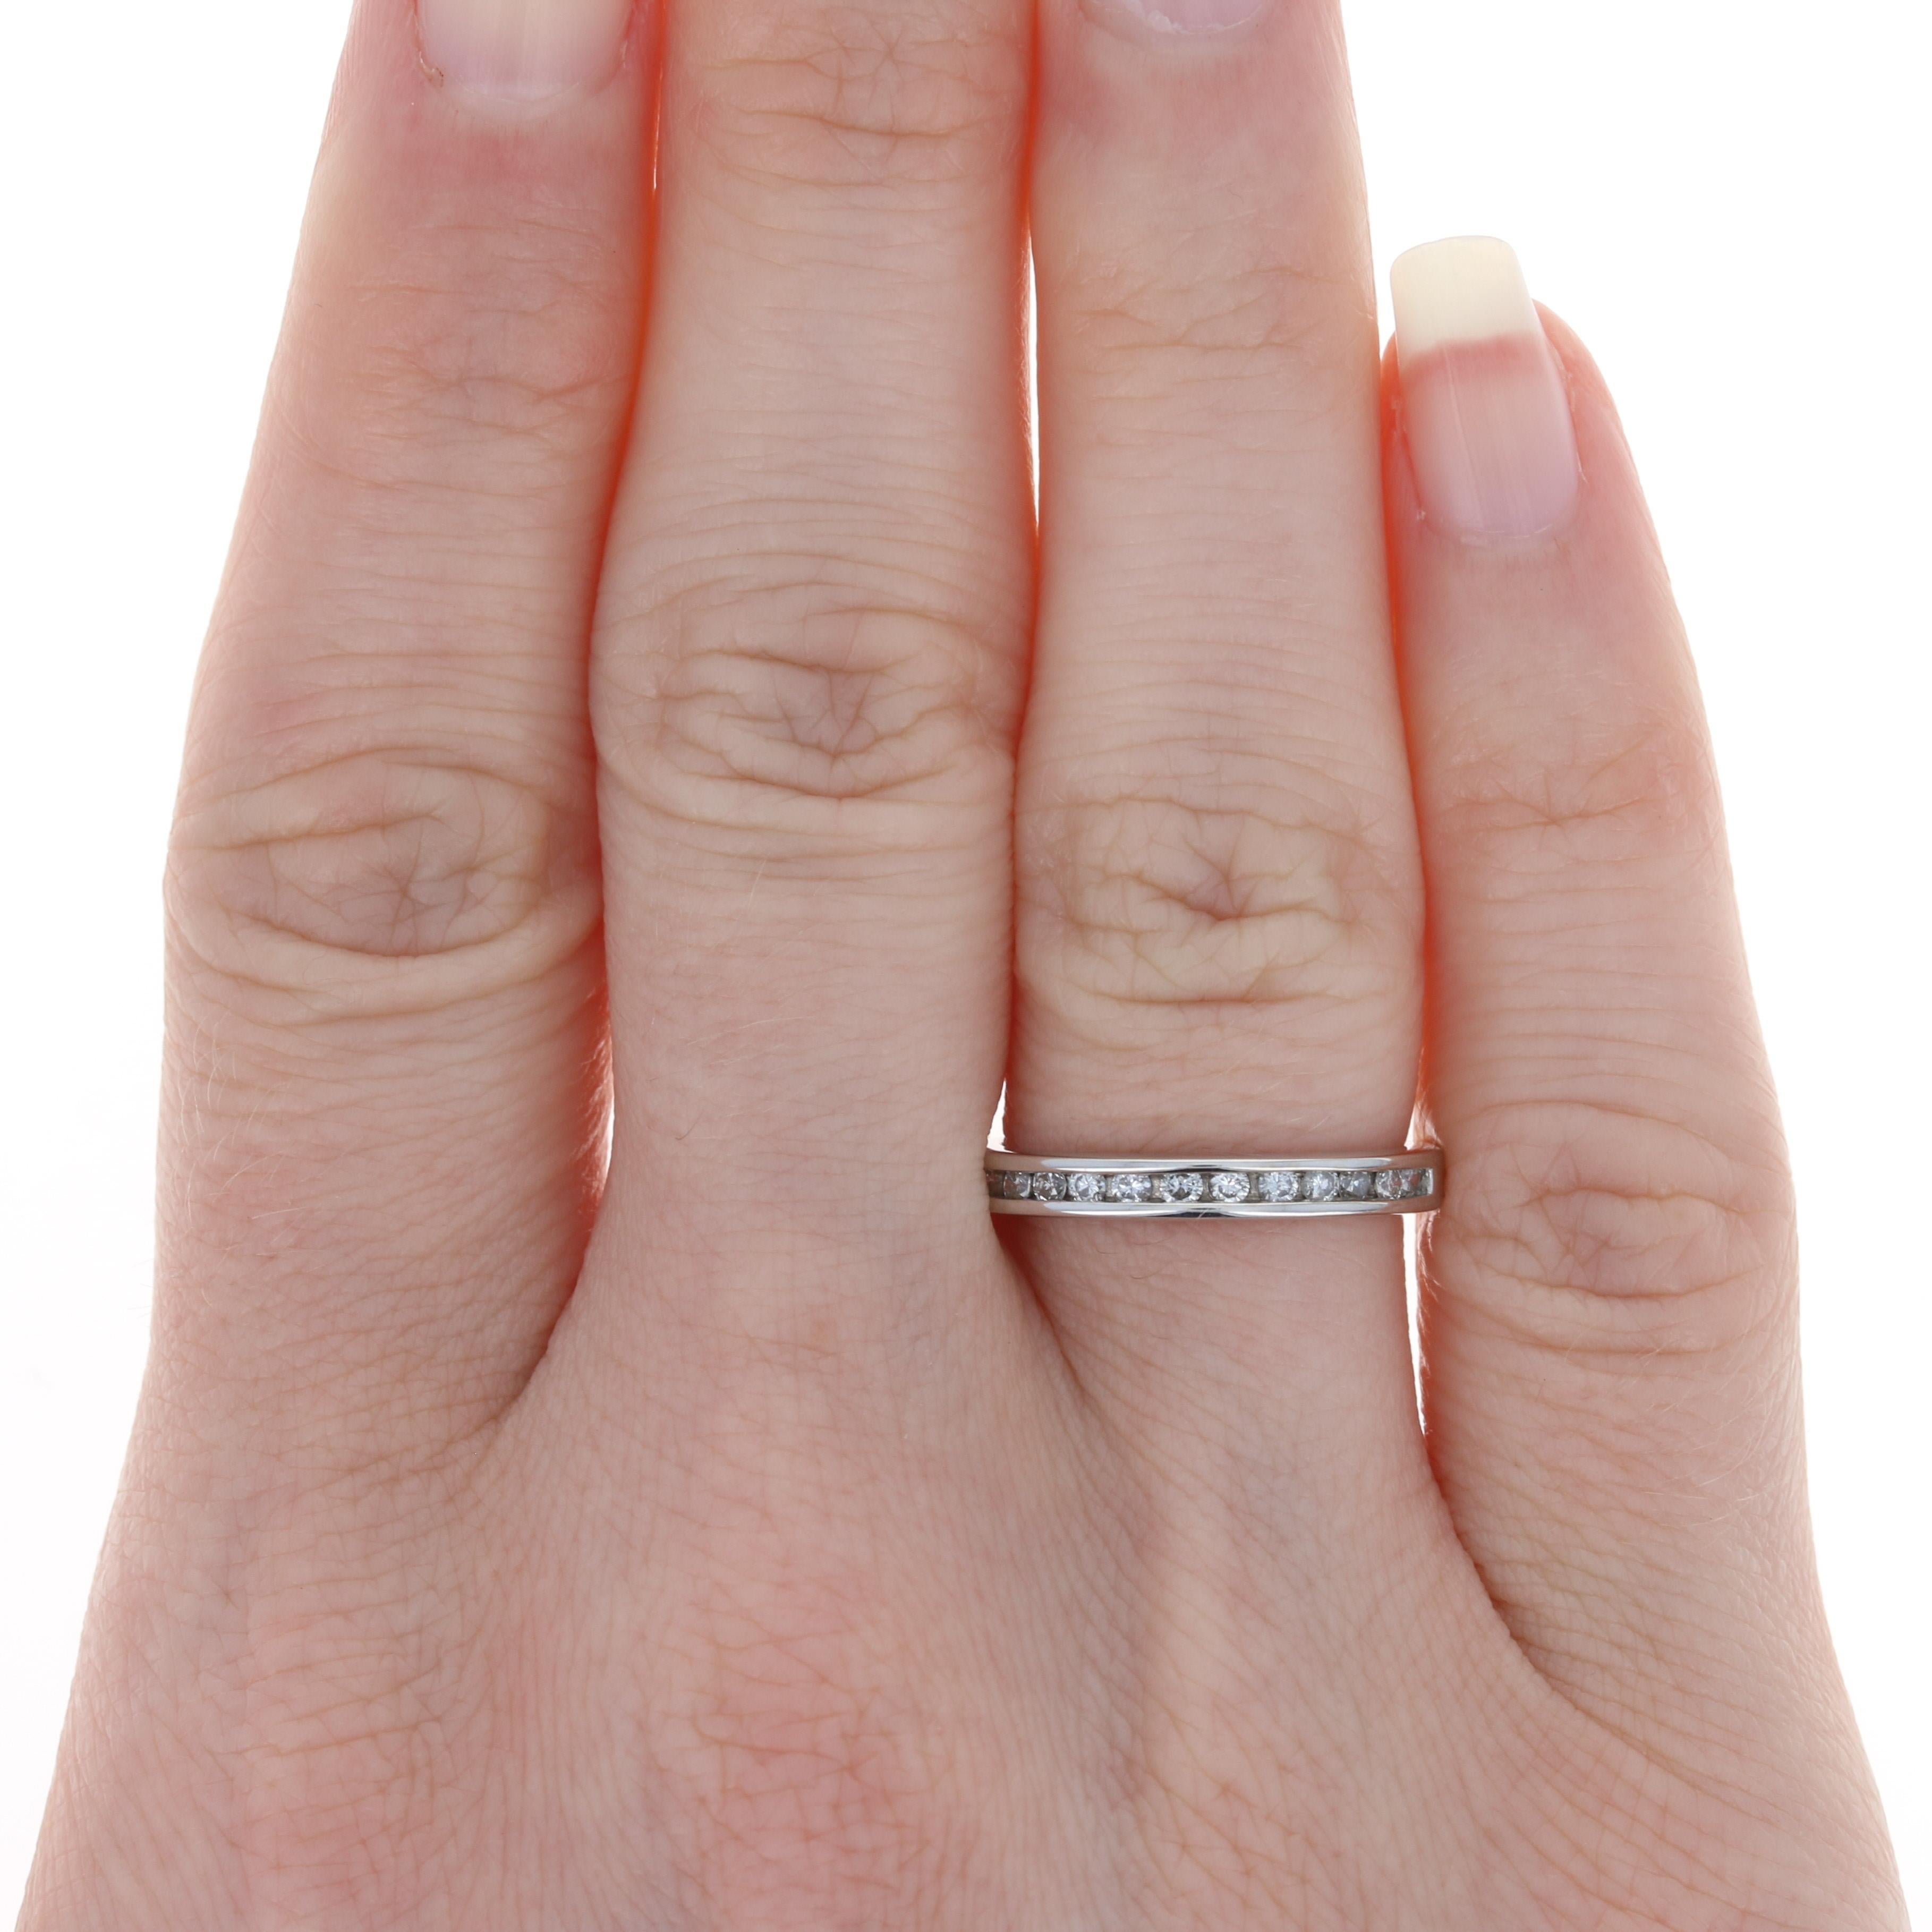 Dieser Ring ist eine Größe 5 3/4 - 6, aber es kann 1 Größe nach oben für eine Gebühr von $ 30 umgestellt werden. Sobald ein Ring in der Größe geändert wurde, garantieren wir die Arbeit, aber wir können keine Rückerstattung für die Größe anbieten.